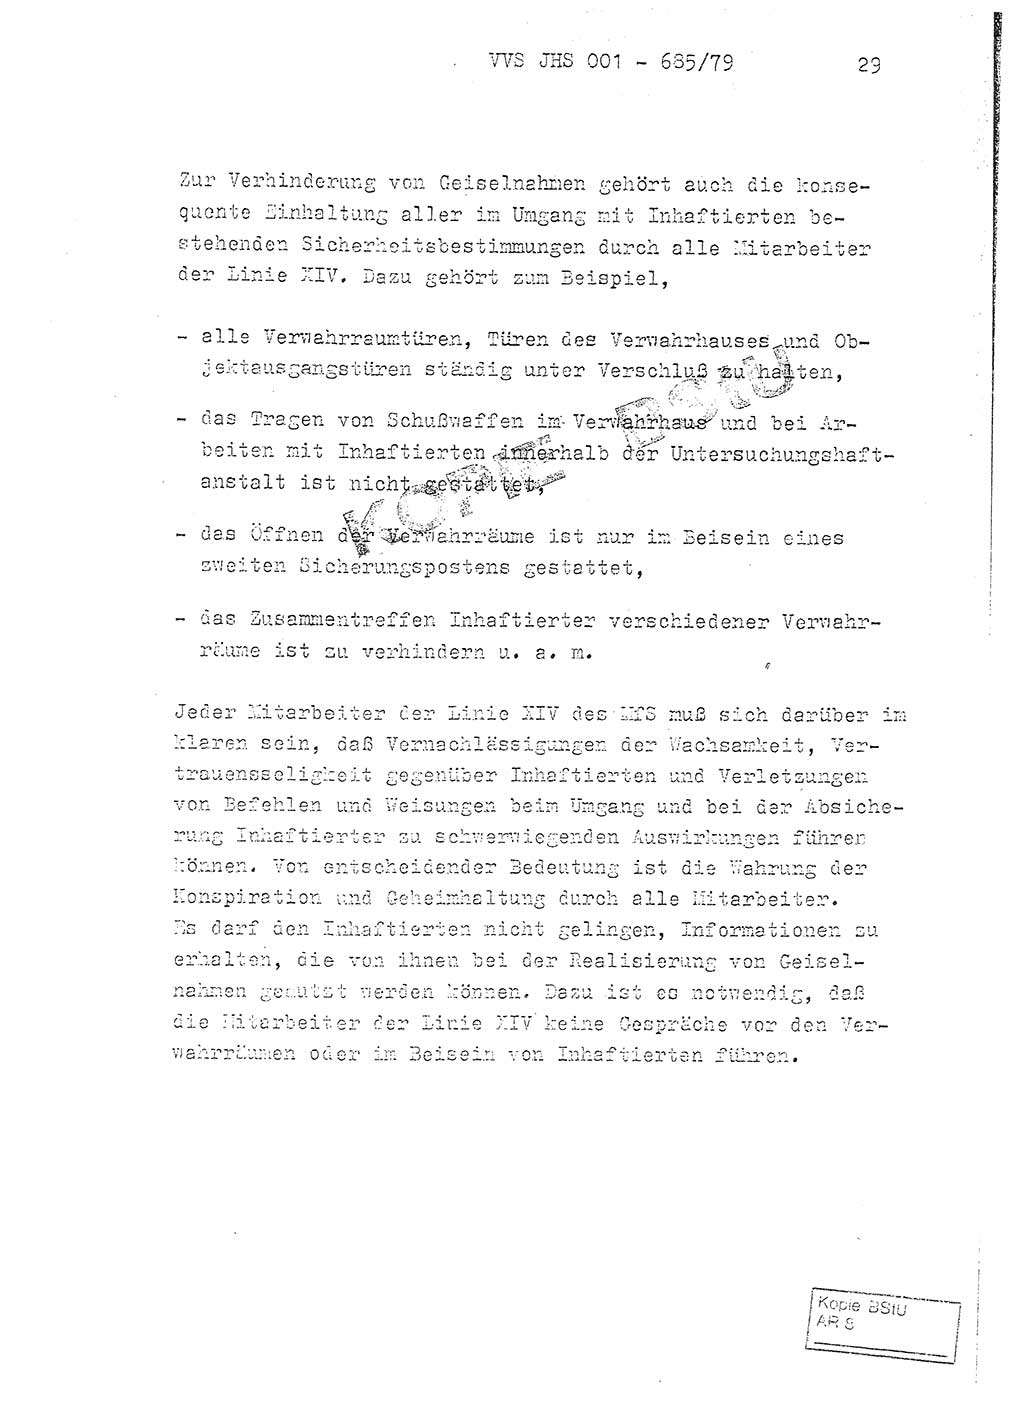 Fachschulabschlußarbeit Oberleutnant Helmut Peckruhn (BV Bln. Abt. ⅩⅣ), Ministerium für Staatssicherheit (MfS) [Deutsche Demokratische Republik (DDR)], Juristische Hochschule (JHS), Vertrauliche Verschlußsache (VVS) 001-685/79, Potsdam 1979, Seite 29 (FS-Abschl.-Arb. MfS DDR JHS VVS 001-685/79 1979, S. 29)